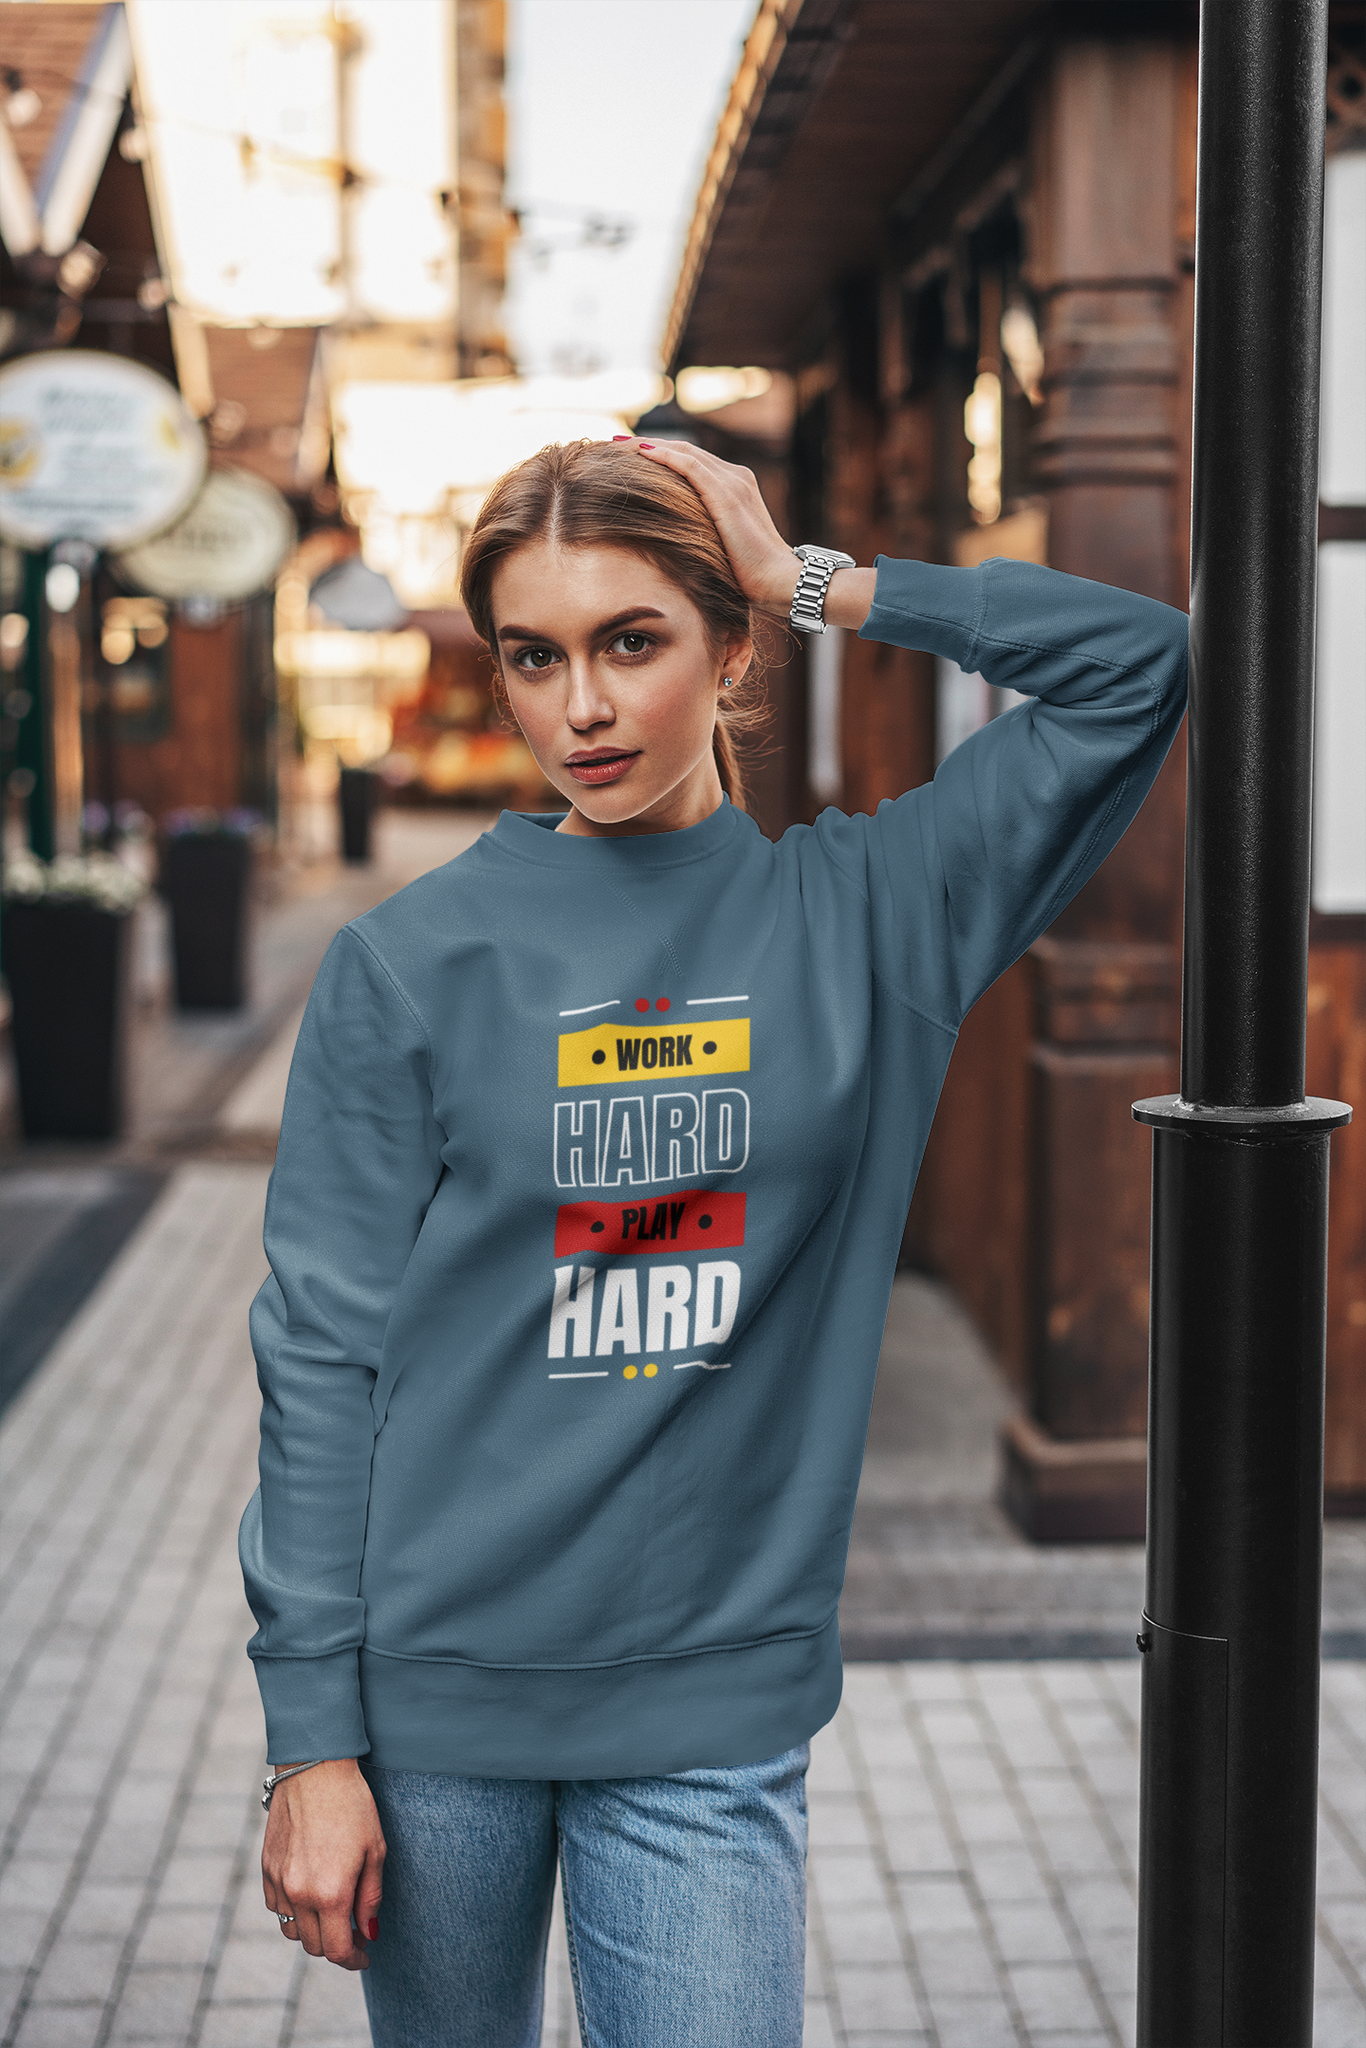 Arbeta Hårt & Njut AV skörden, Sweatshirt med text Work Hard Play Hard